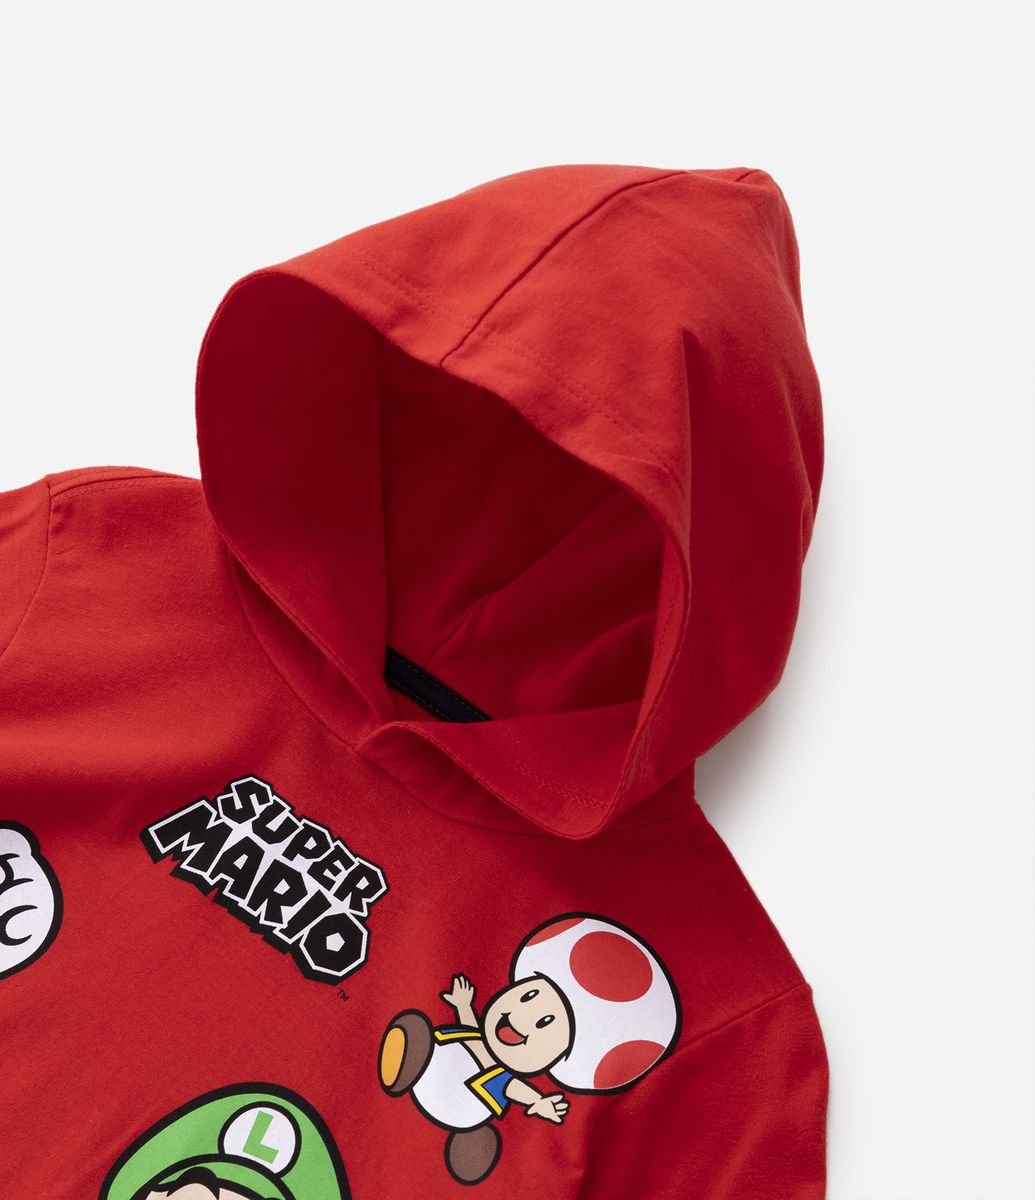 Camiseta Infantil Estampa Super Mário - Tam 3 a 10 Anos Vermelho